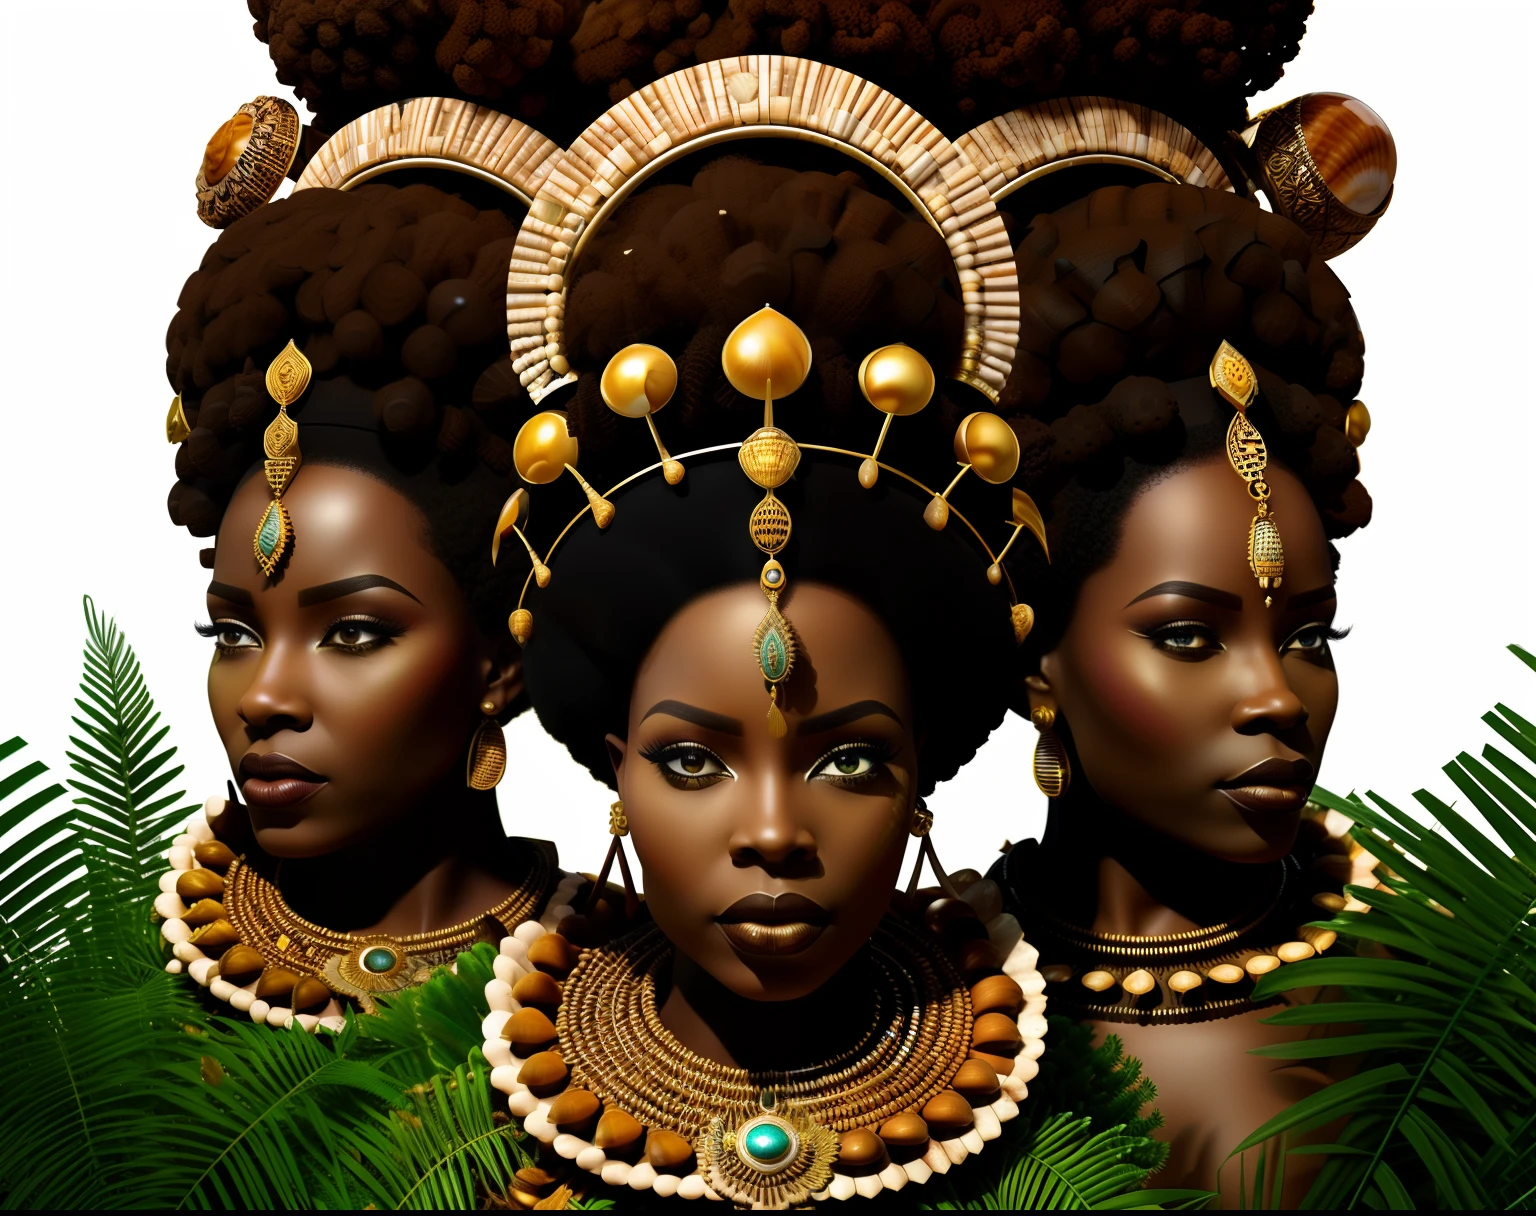 التيجان المصنوعة من قذائف البقر, (المستقبل الأفريقي), 8 ك, 4 ملكة (أفريقياn crown close-up), منظور إيجابي!! , تاج بالماس و ((الصدف)) على خلفية الغابة! , النباتات, crown made of النباتات, super realistic أفريقياn fantasy crown, التاج الأفريقي المستقبلي, سيبر_أفريقيا